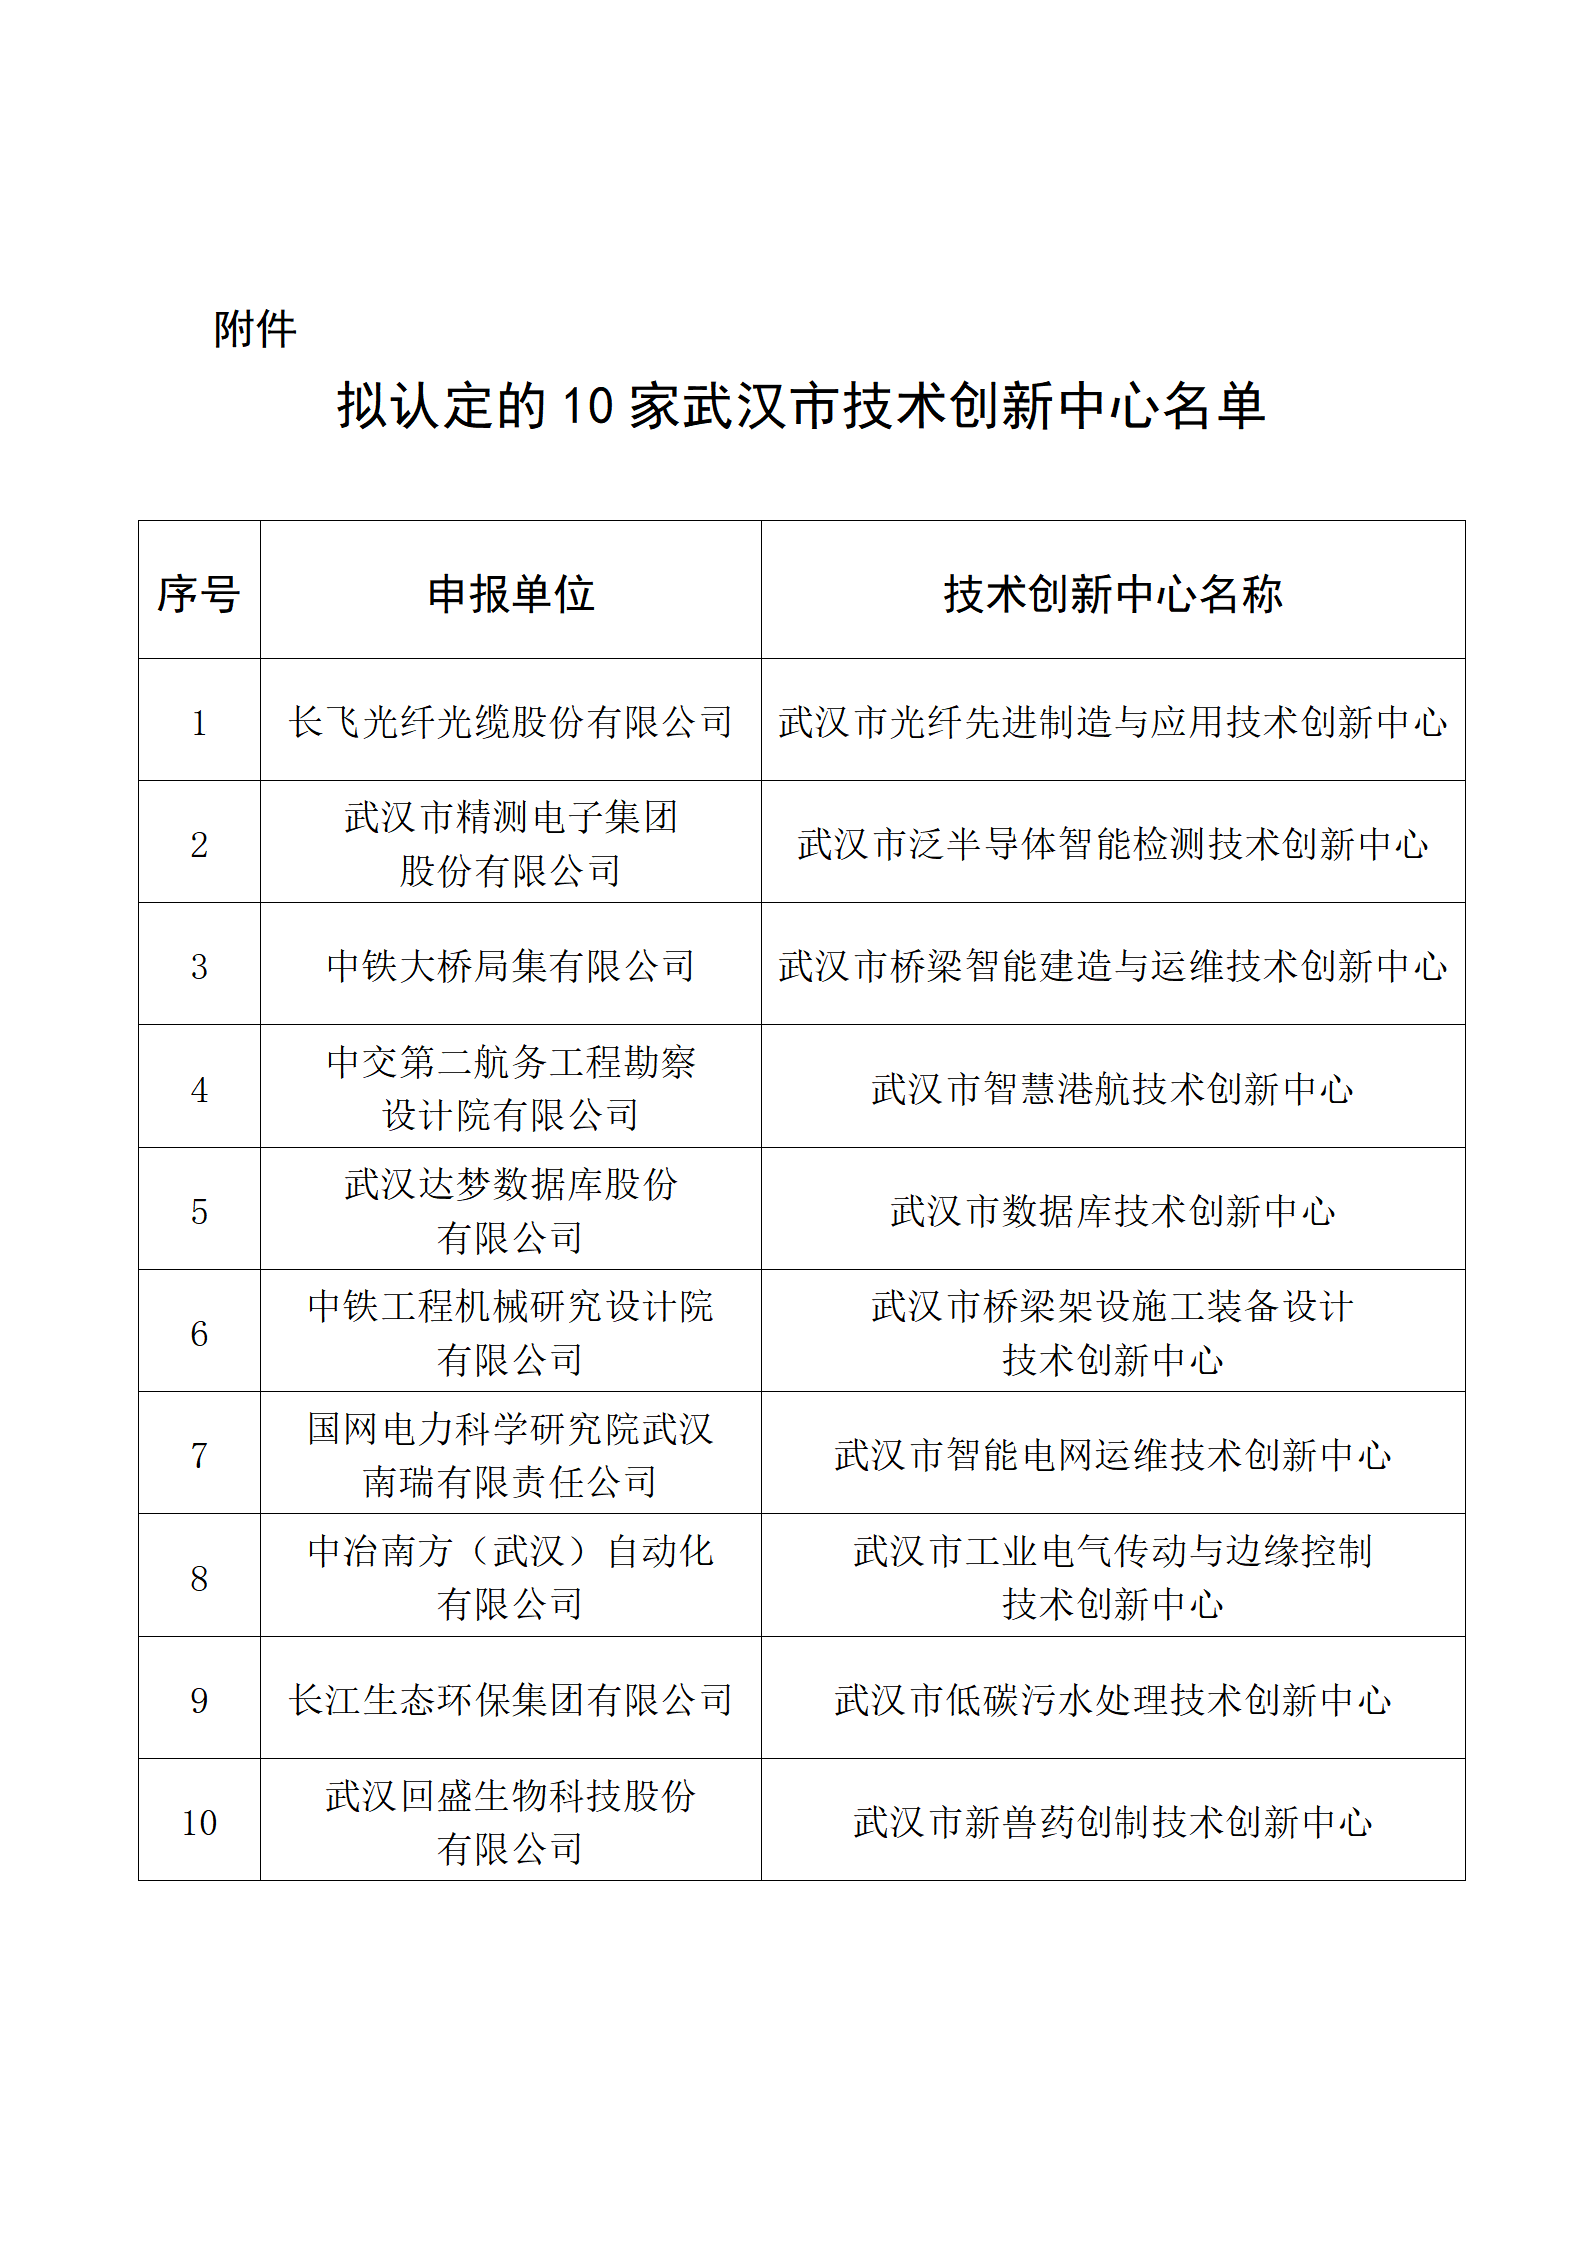 拟认定的10家武汉市技术创新中心名单_01.png